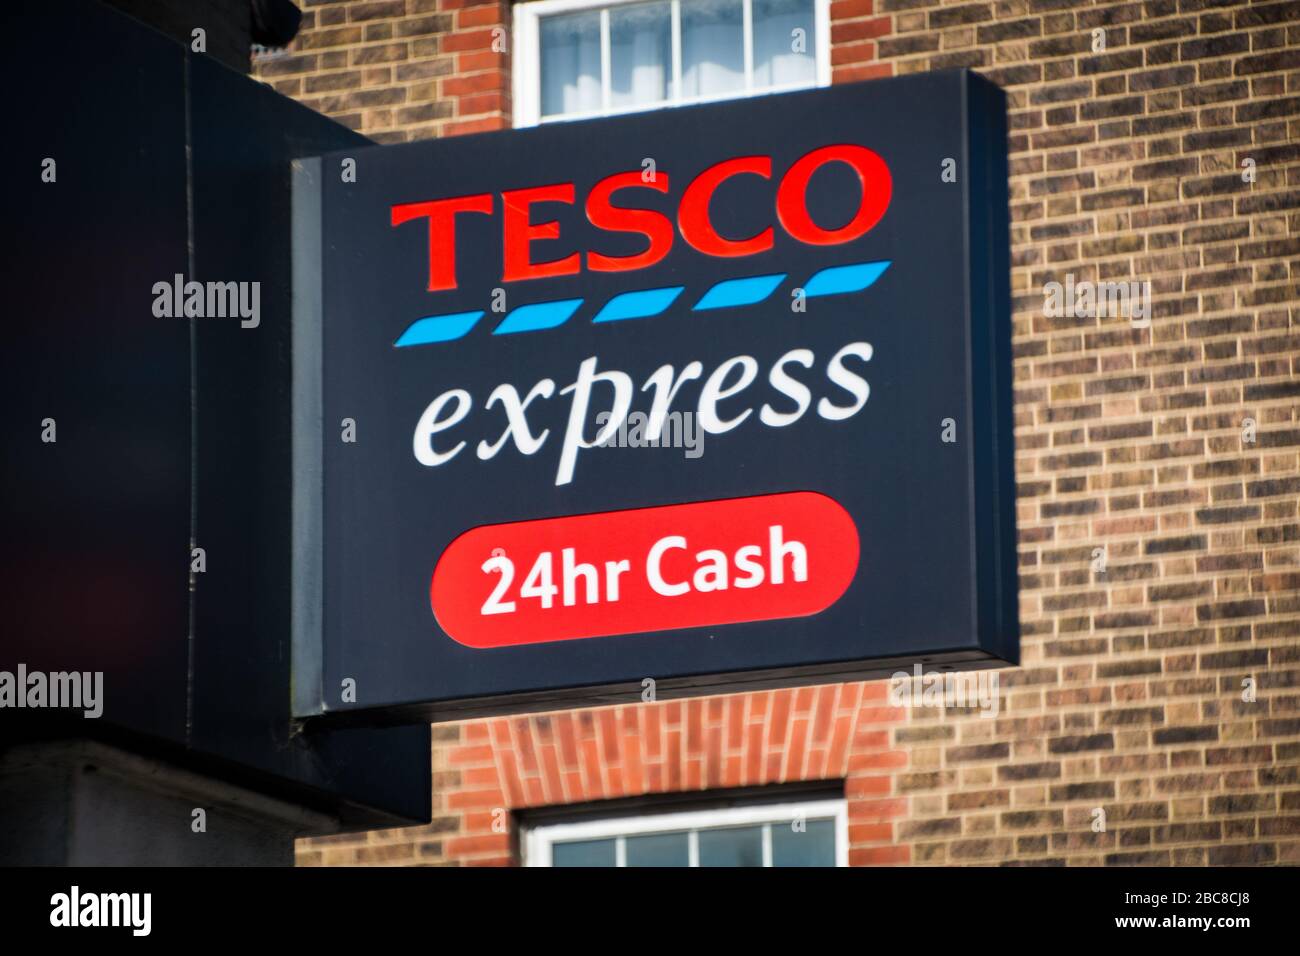 Tesco Express- versione locale della grande catena di supermercati inglesi- logo esterno / segnaletica- Londra Foto Stock